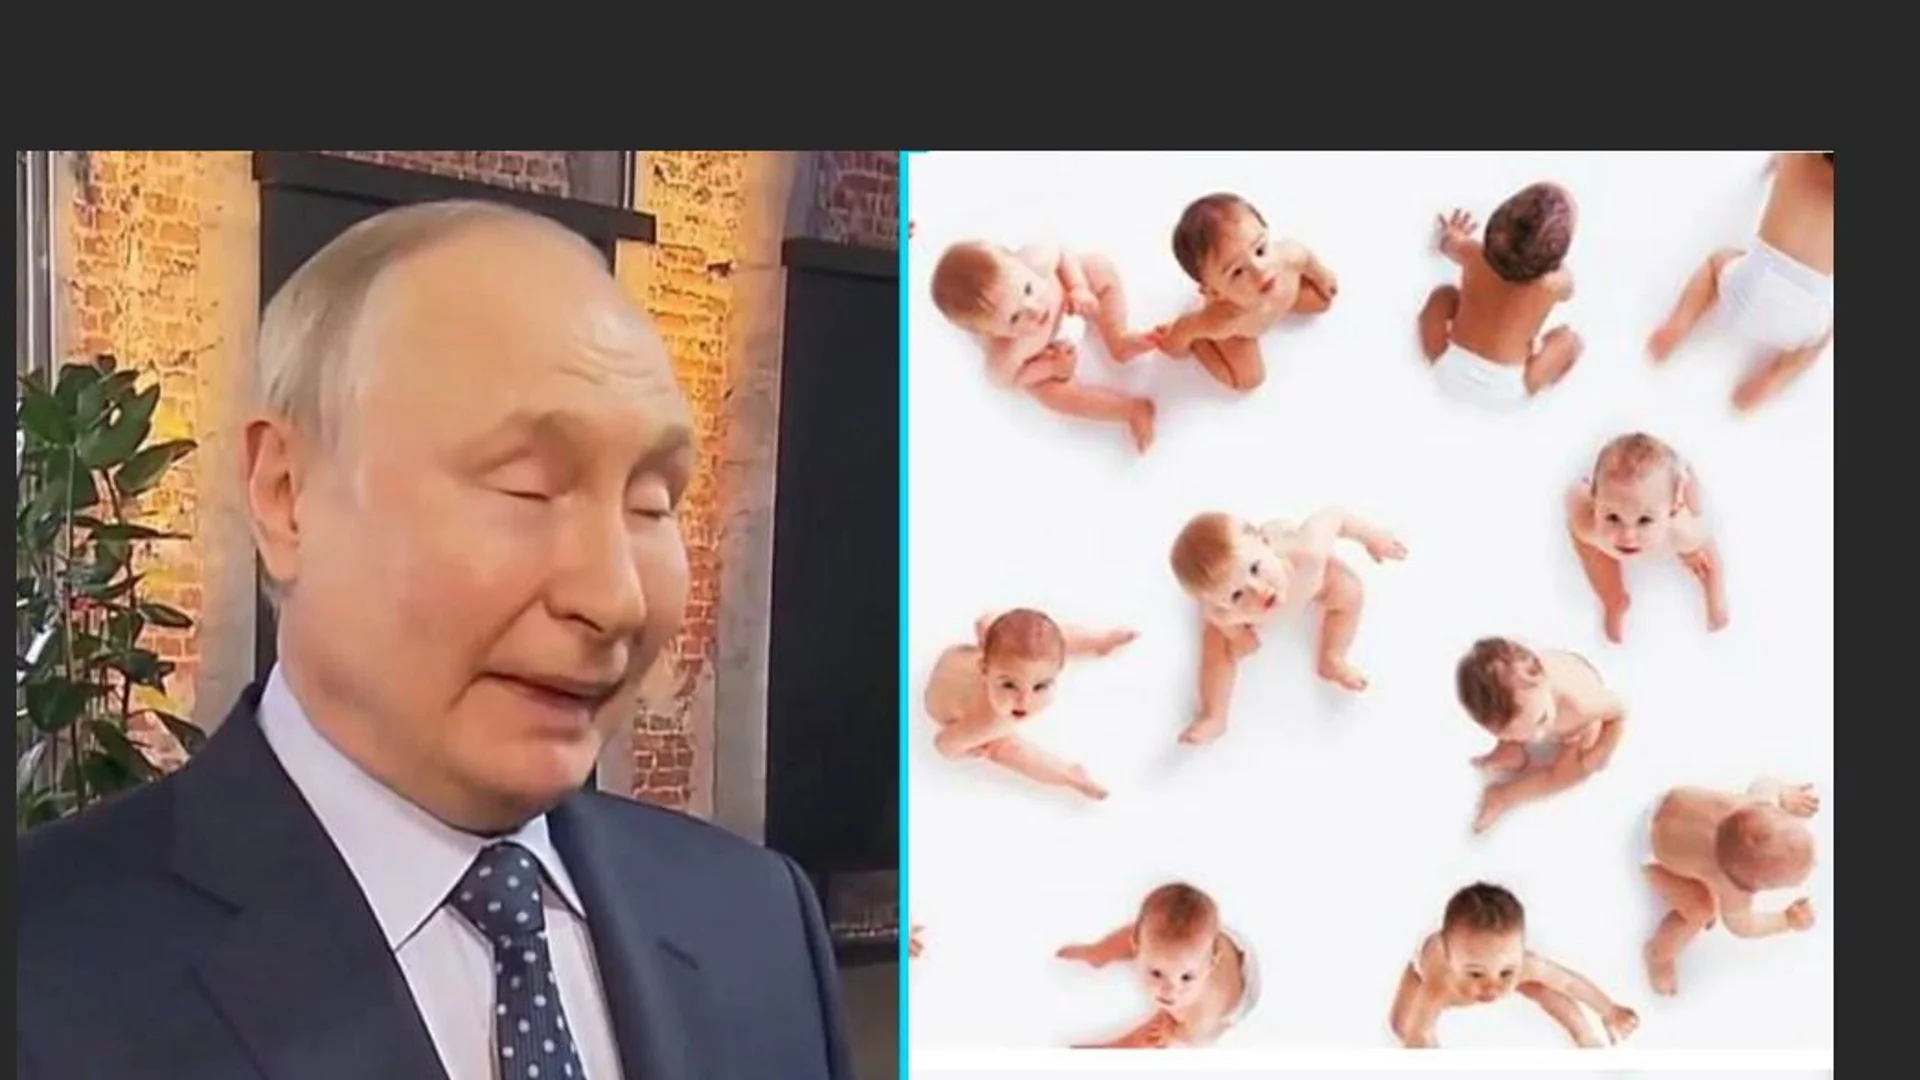 Путин поиска рускините да раждат по 7-8 деца. Рускините: Само ако раждаме от Путин!